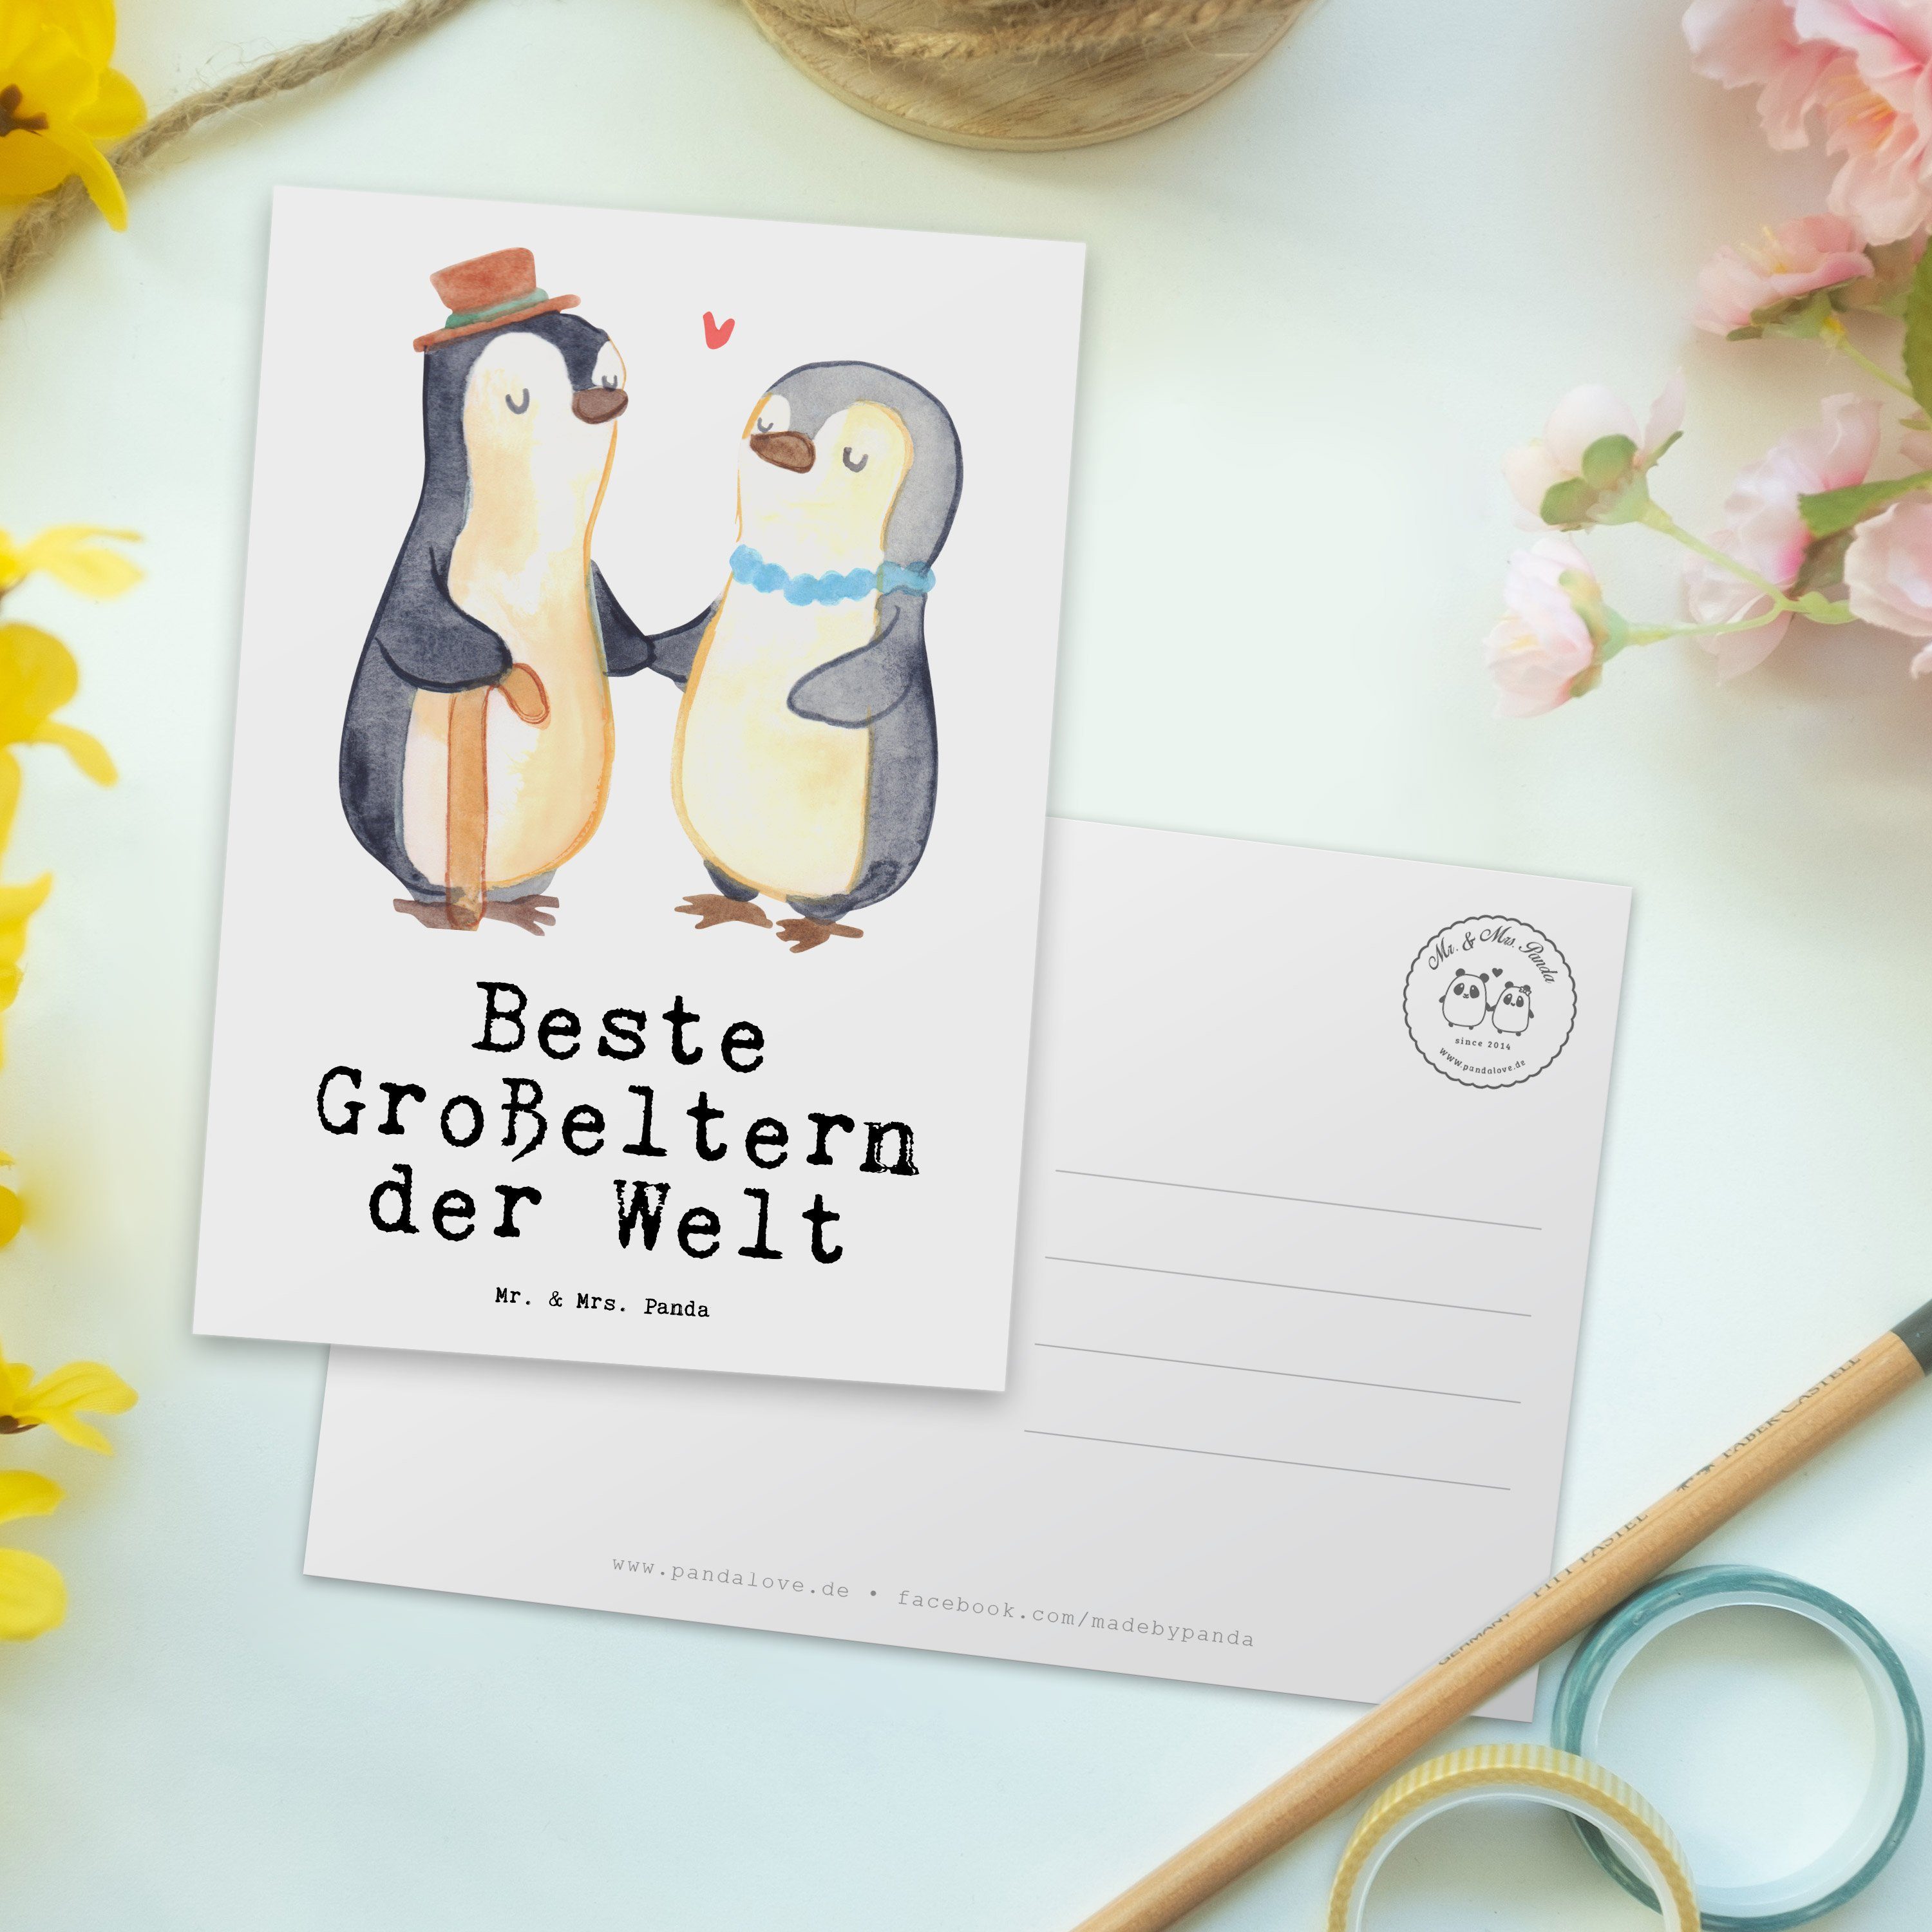 Beste - der Mr. Grußkarte, Pinguin Panda Mrs. Oma - Großeltern Weiß Postkarte & Geschenk, Welt